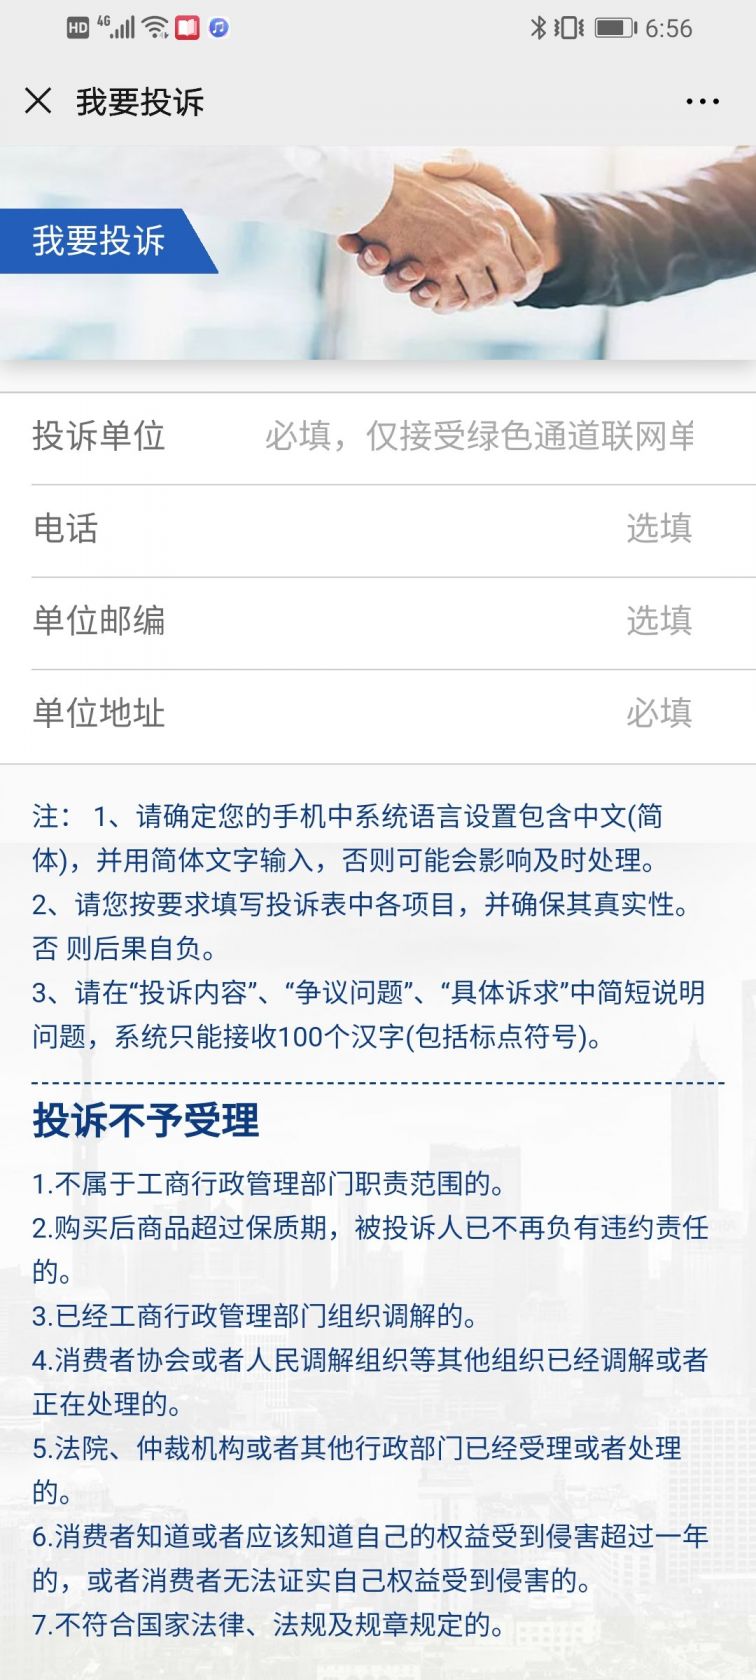 上海12315消费者投诉流程